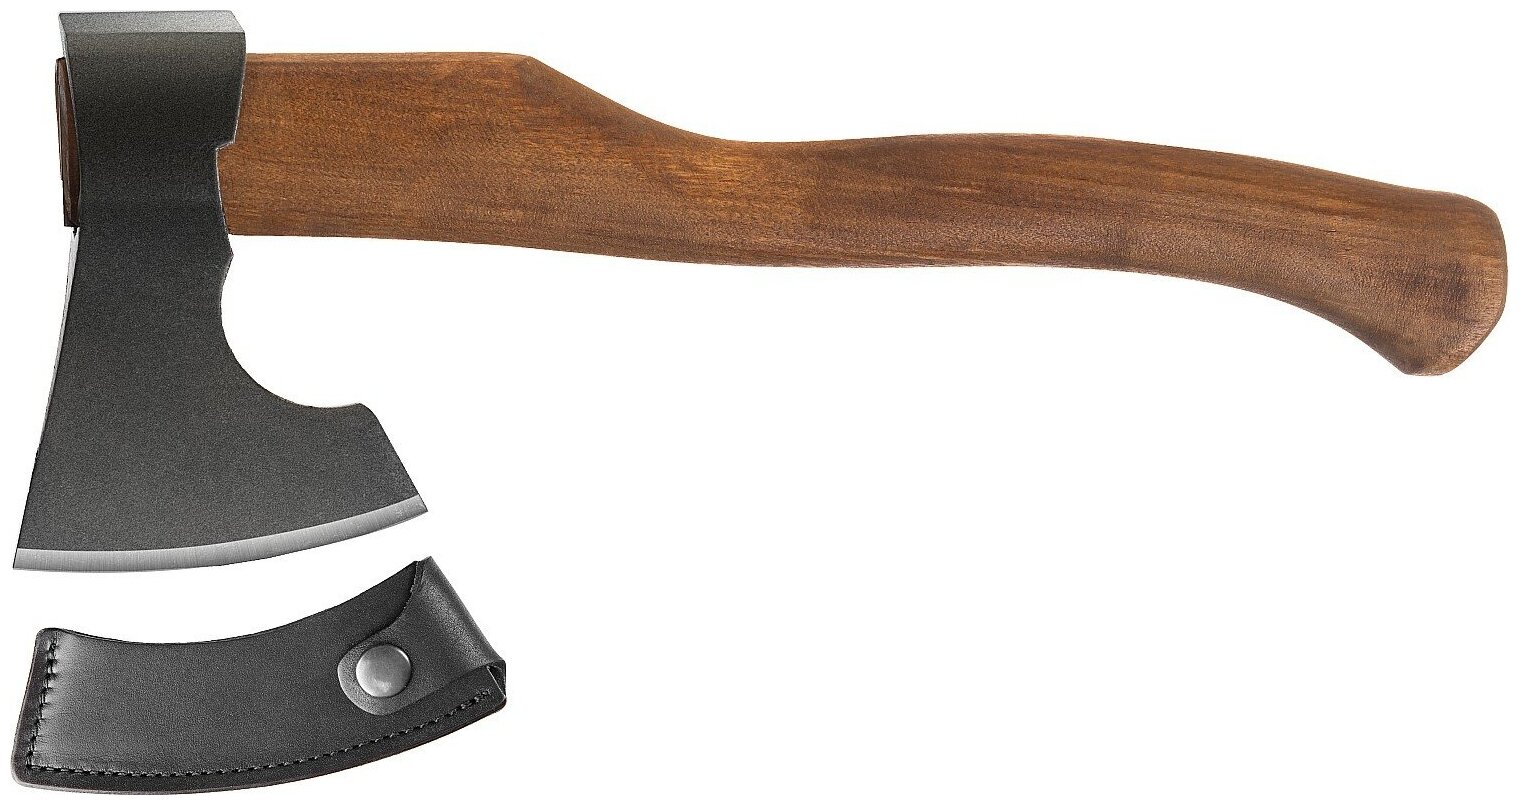 Кованый топор Ижсталь-ТНП Викинг-Премиум 650/950 г деревянная рукоятка 400 мм